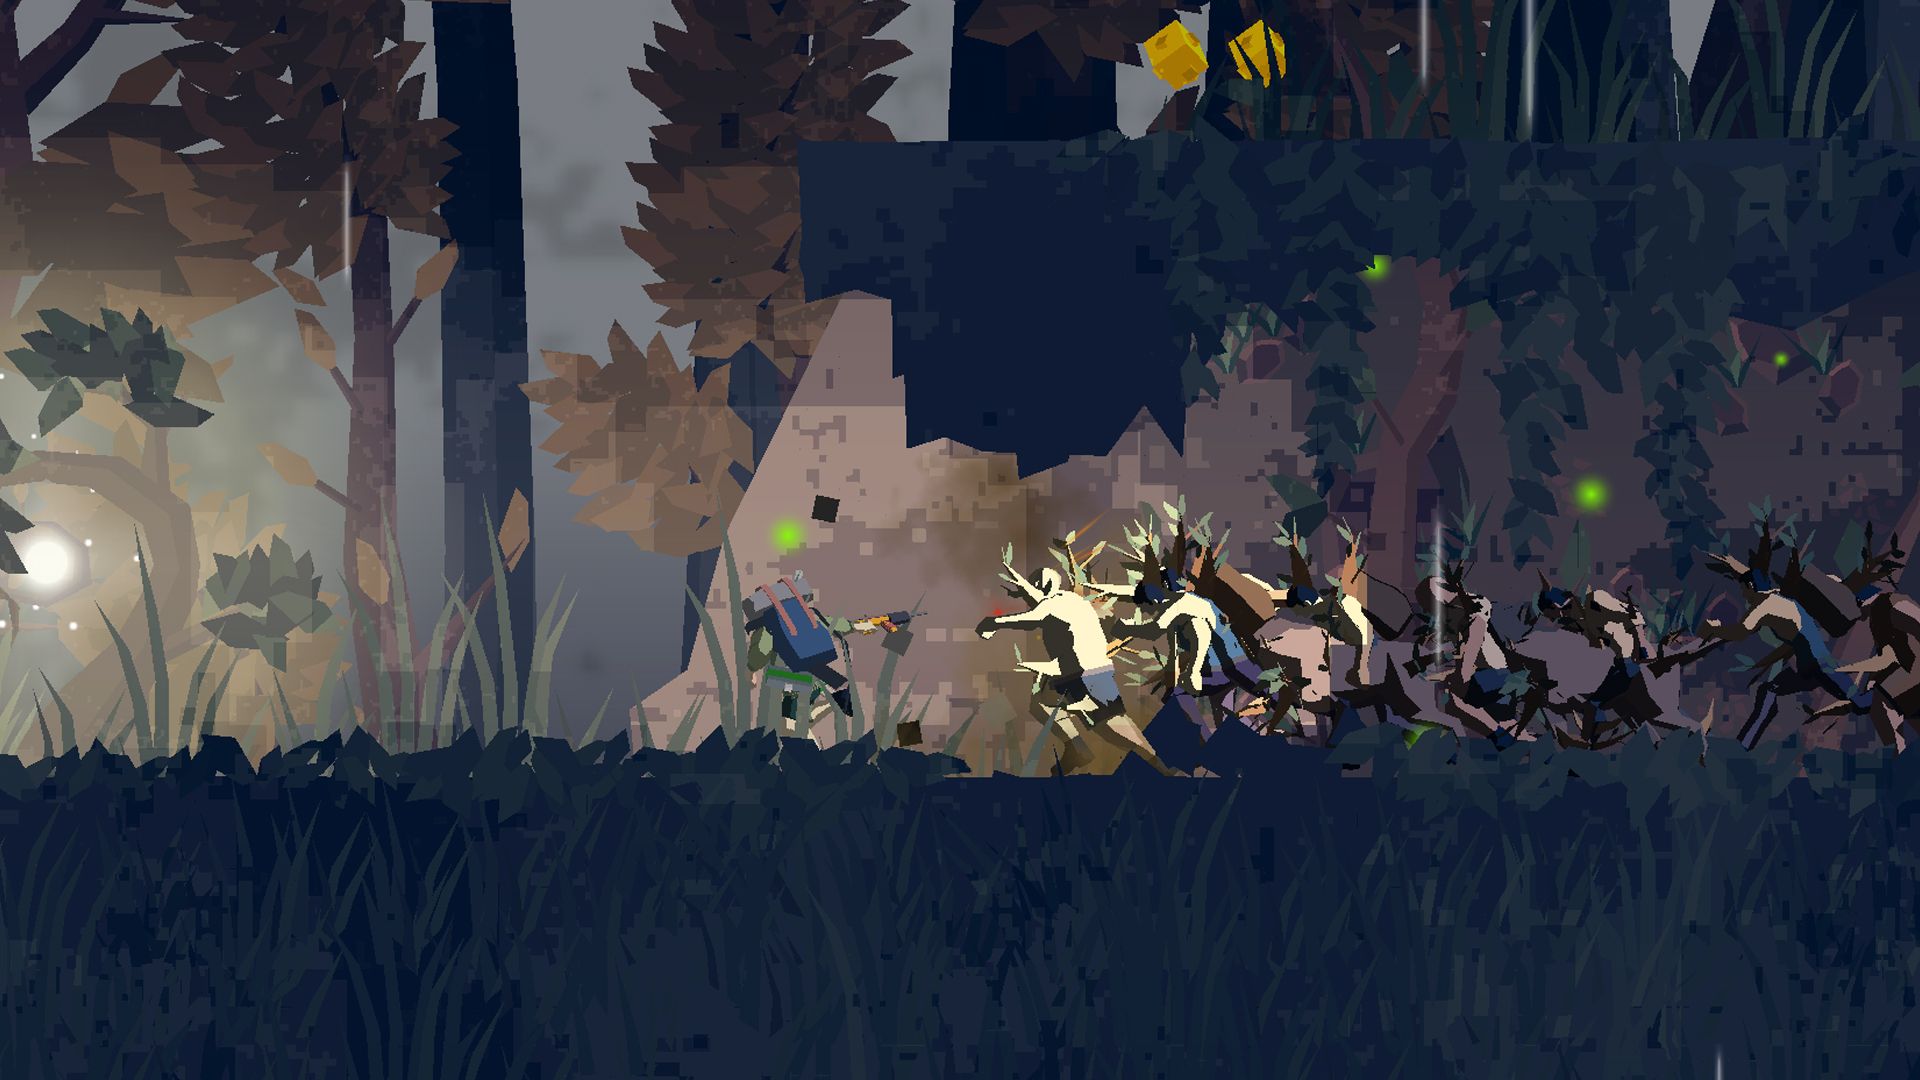 کاراکتری در حال مبارزه در جنگل با موجودات عجیب غریب در بازی Dead Rain